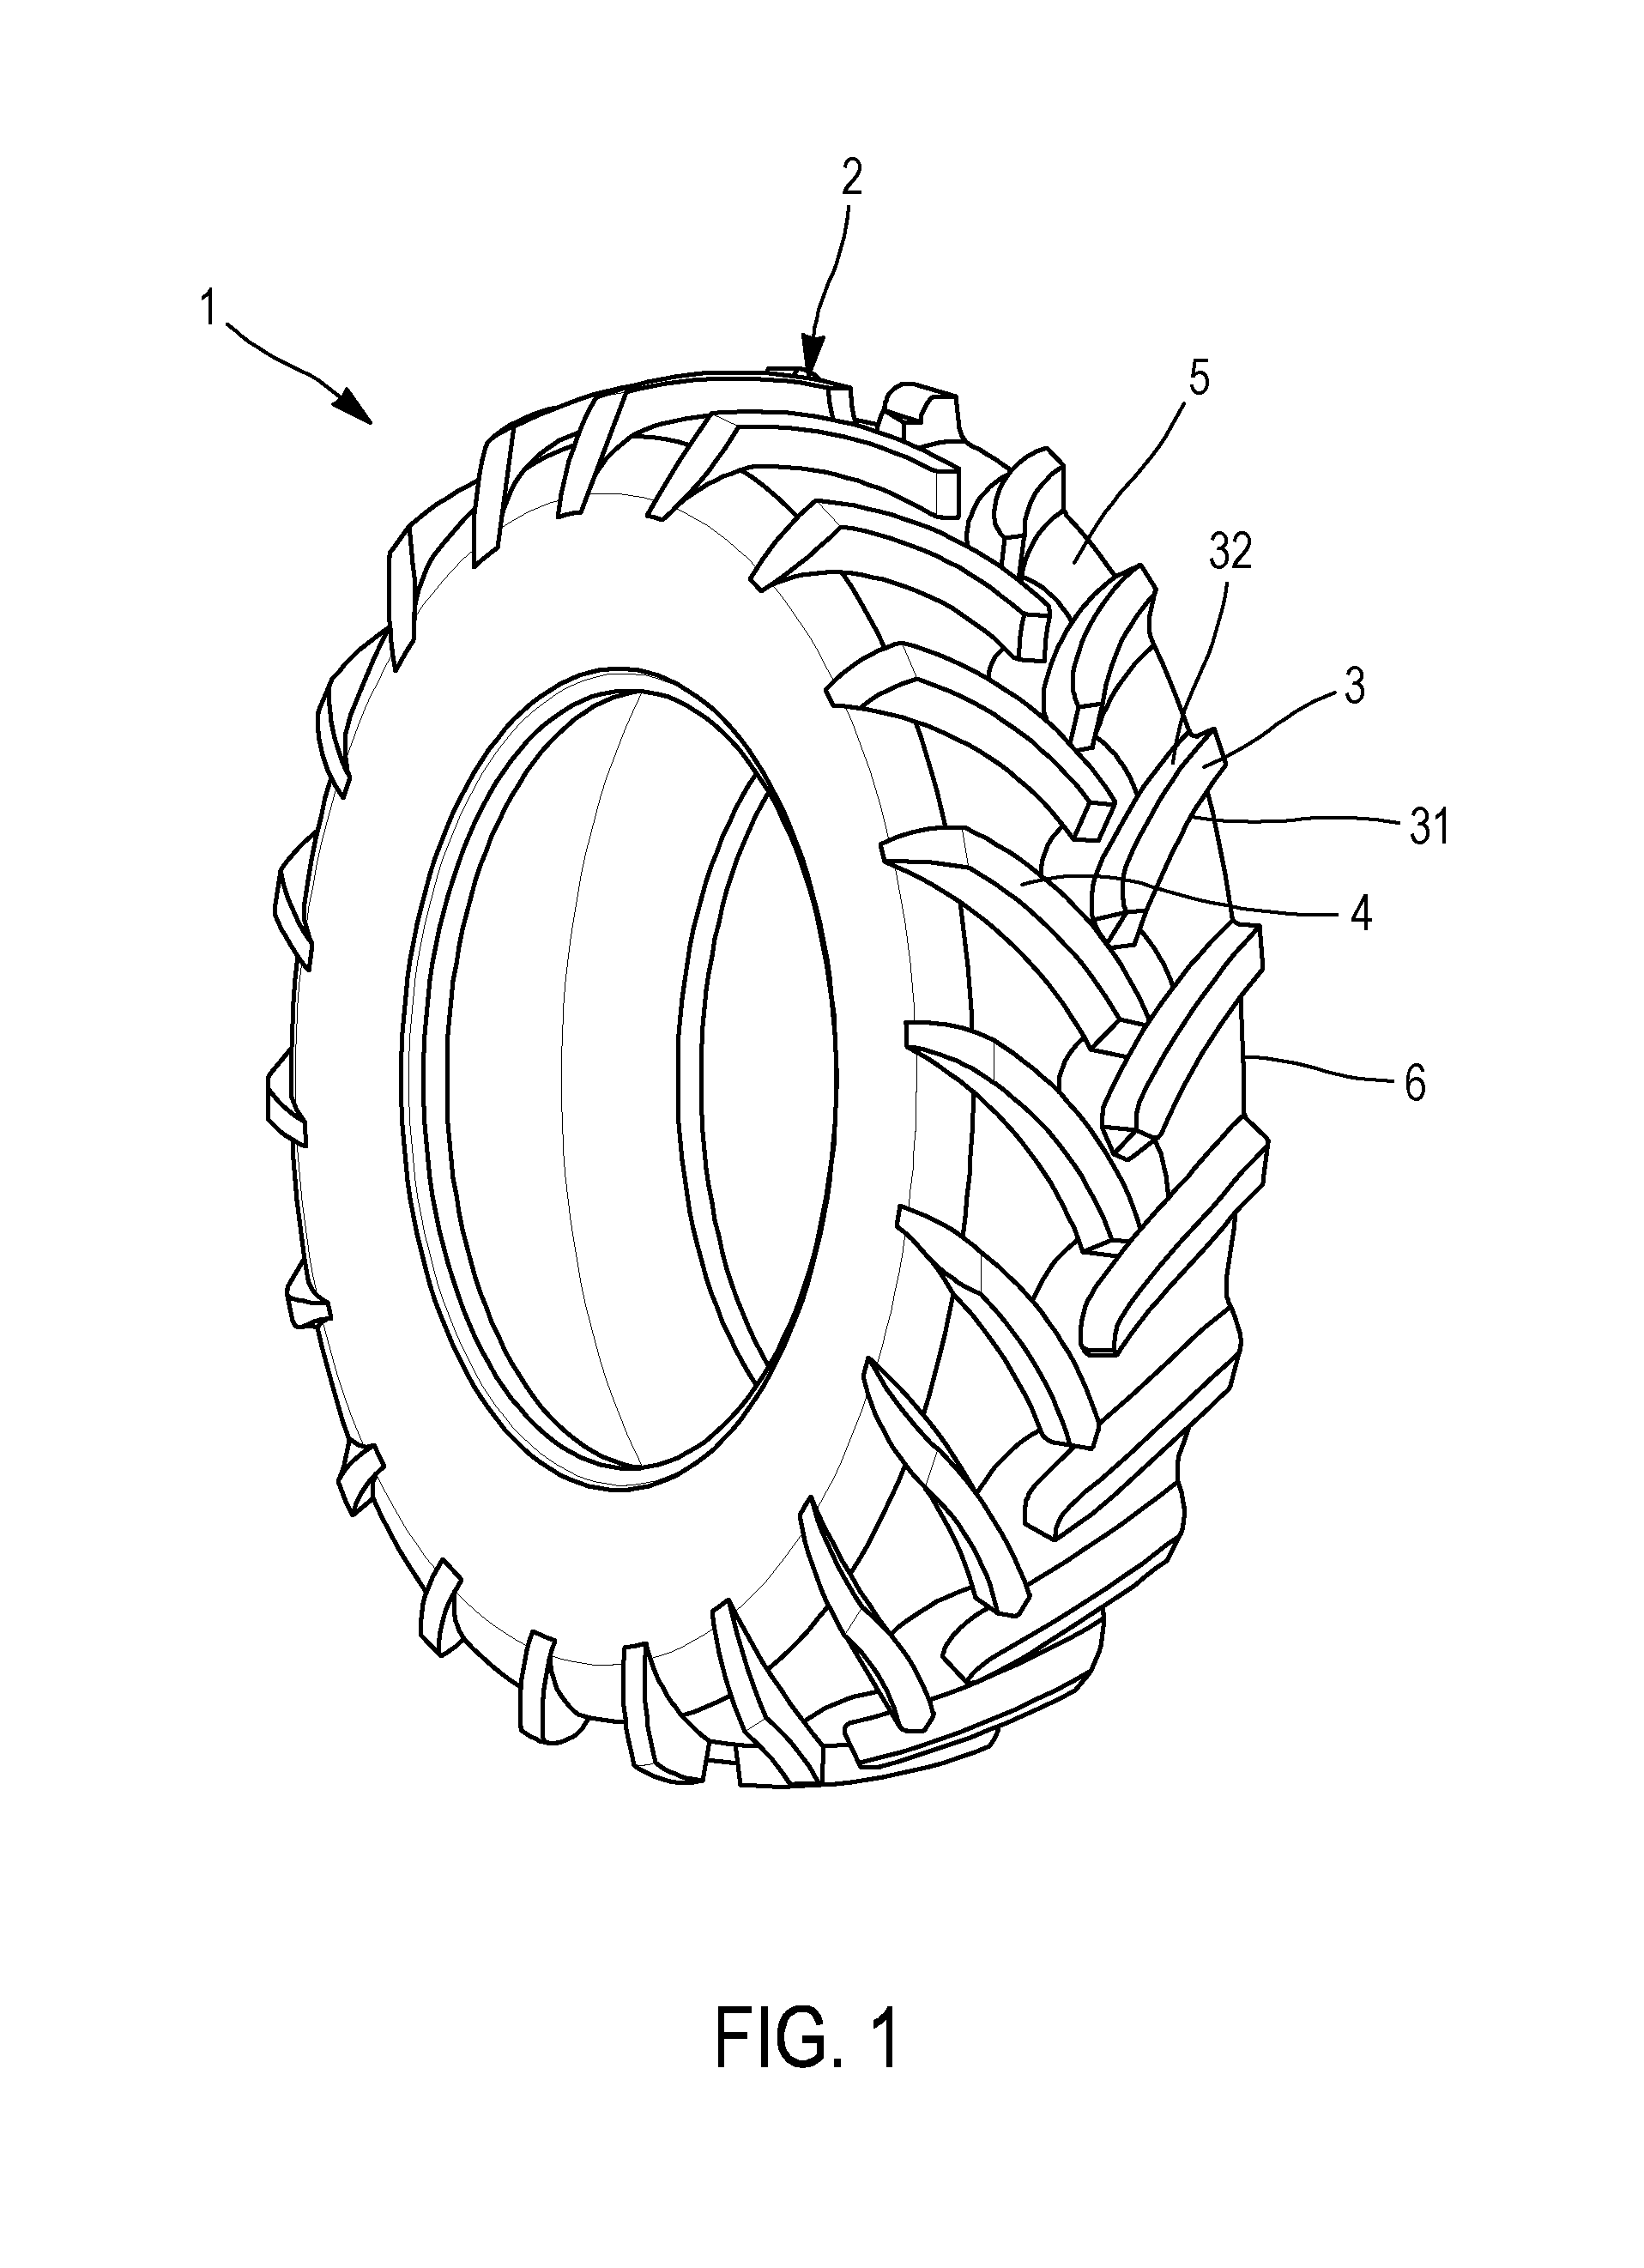 Tire tread for a farm tractor